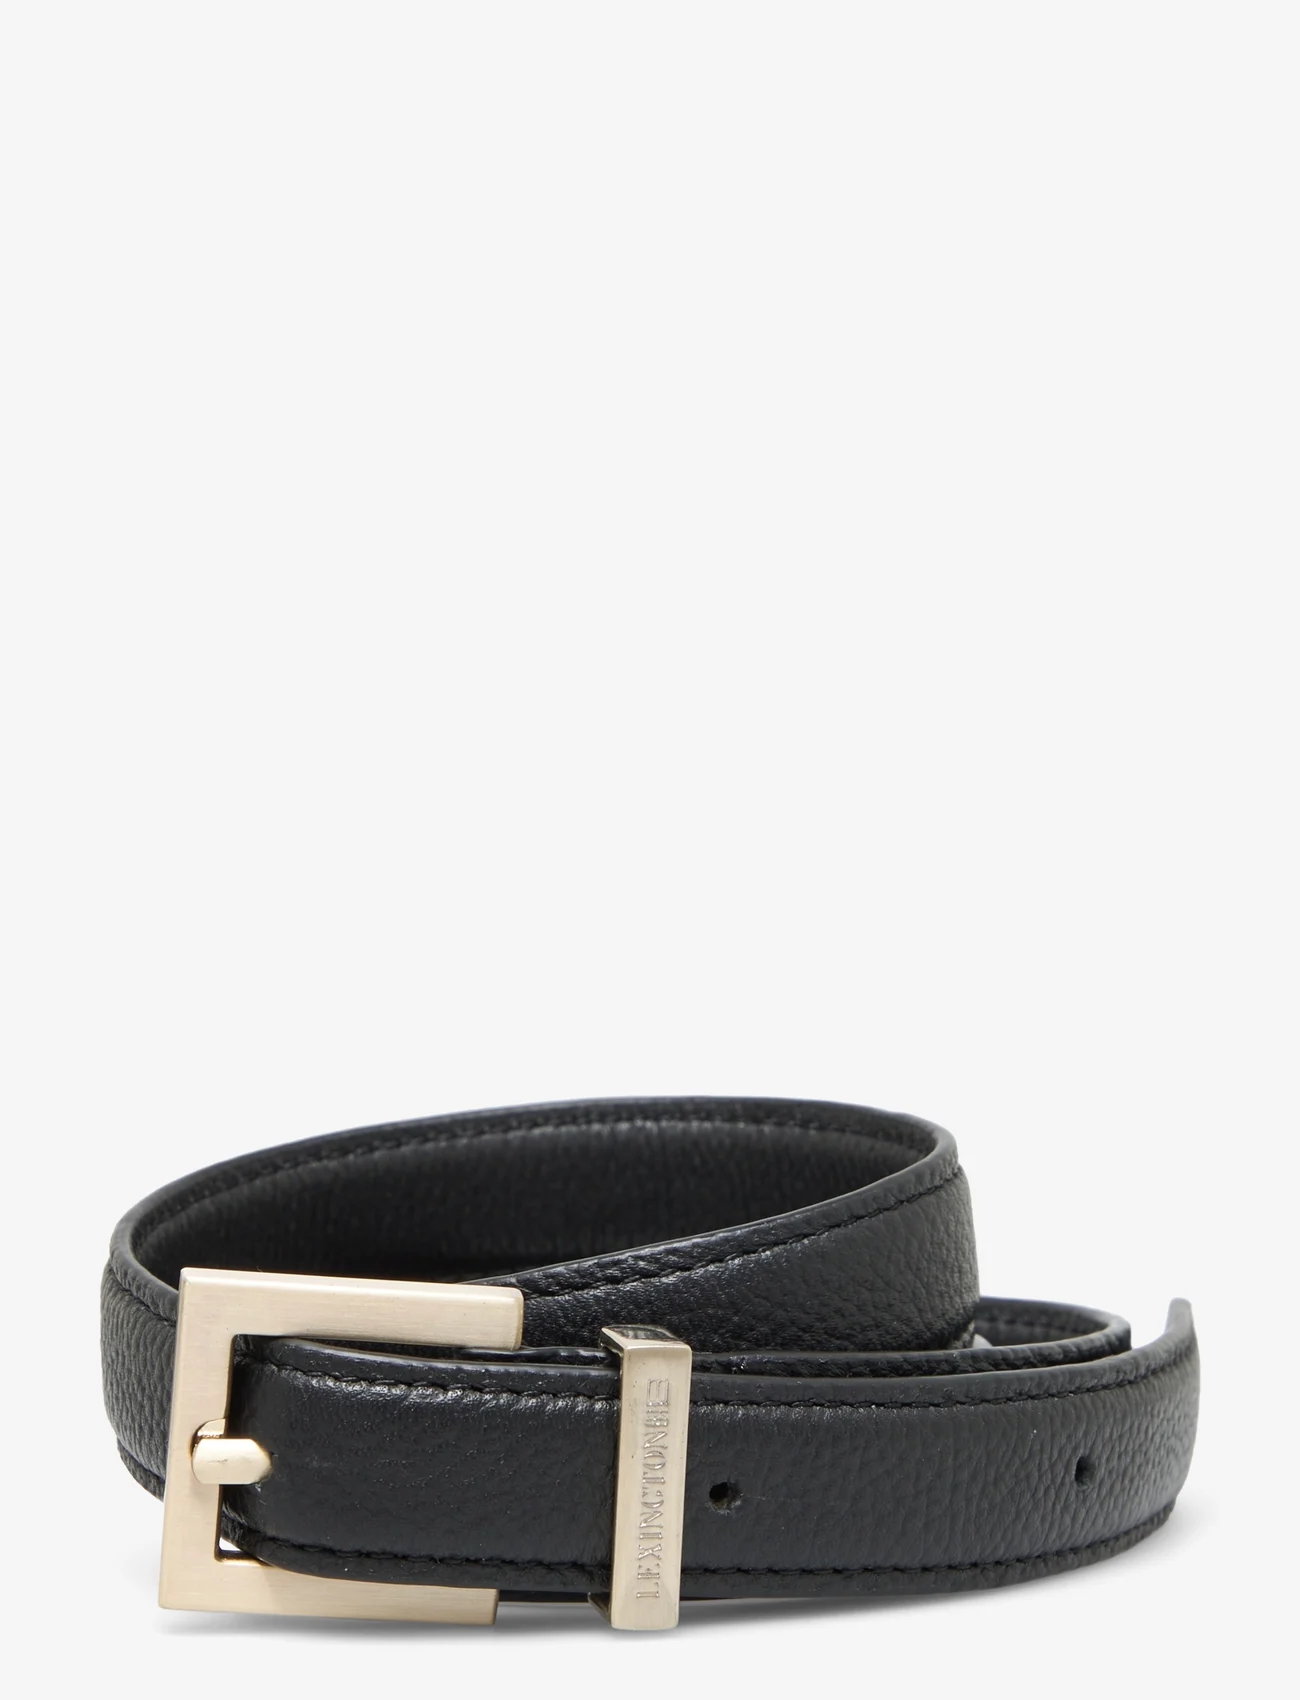 Lexington Clothing - Lexington Leather Belt - belts - black - 0